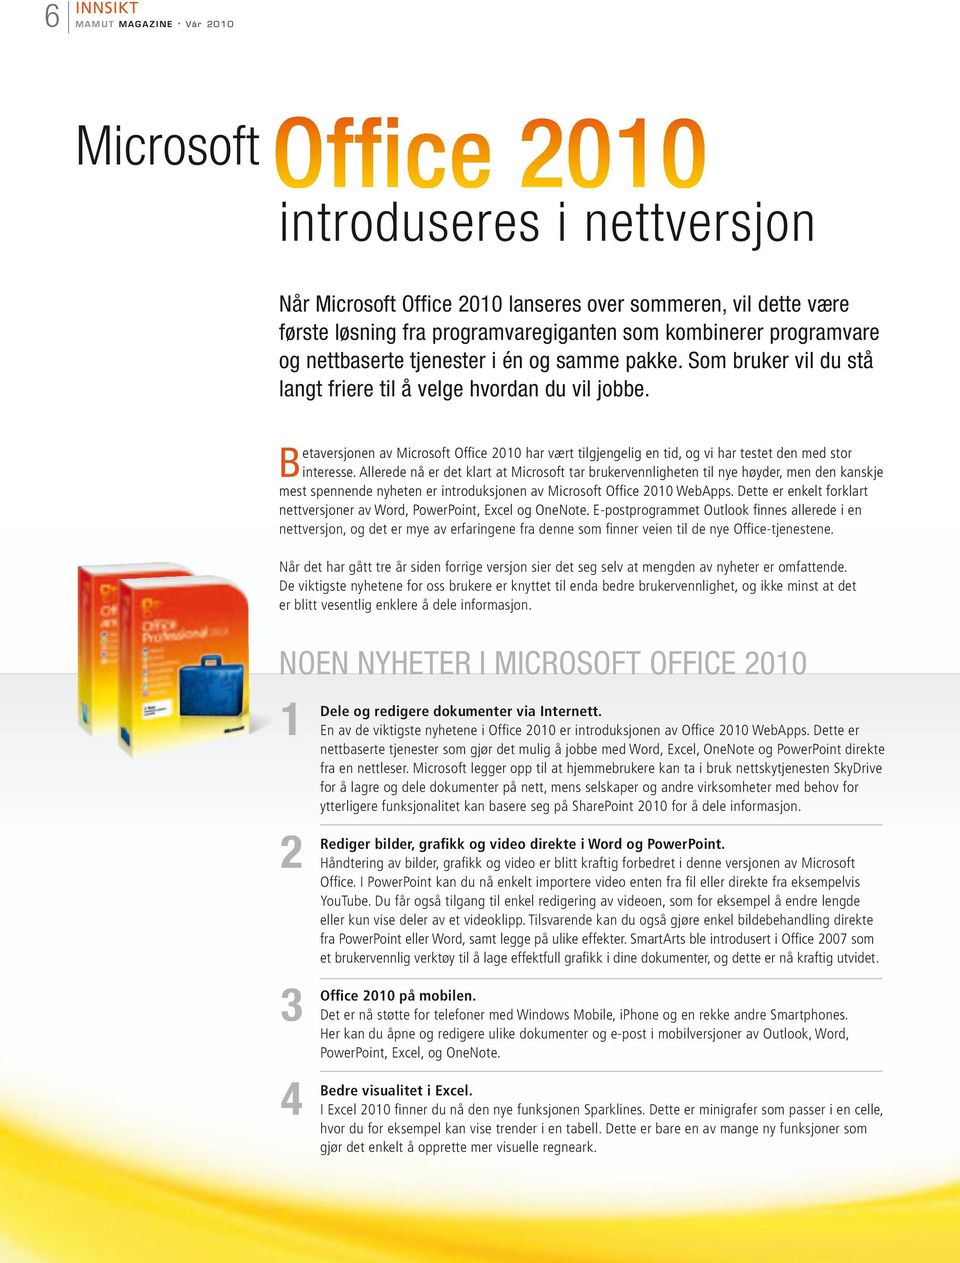 Betaversjonen av Microsoft Office 2010 har vært tilgjengelig en tid, og vi har testet den med stor interesse.